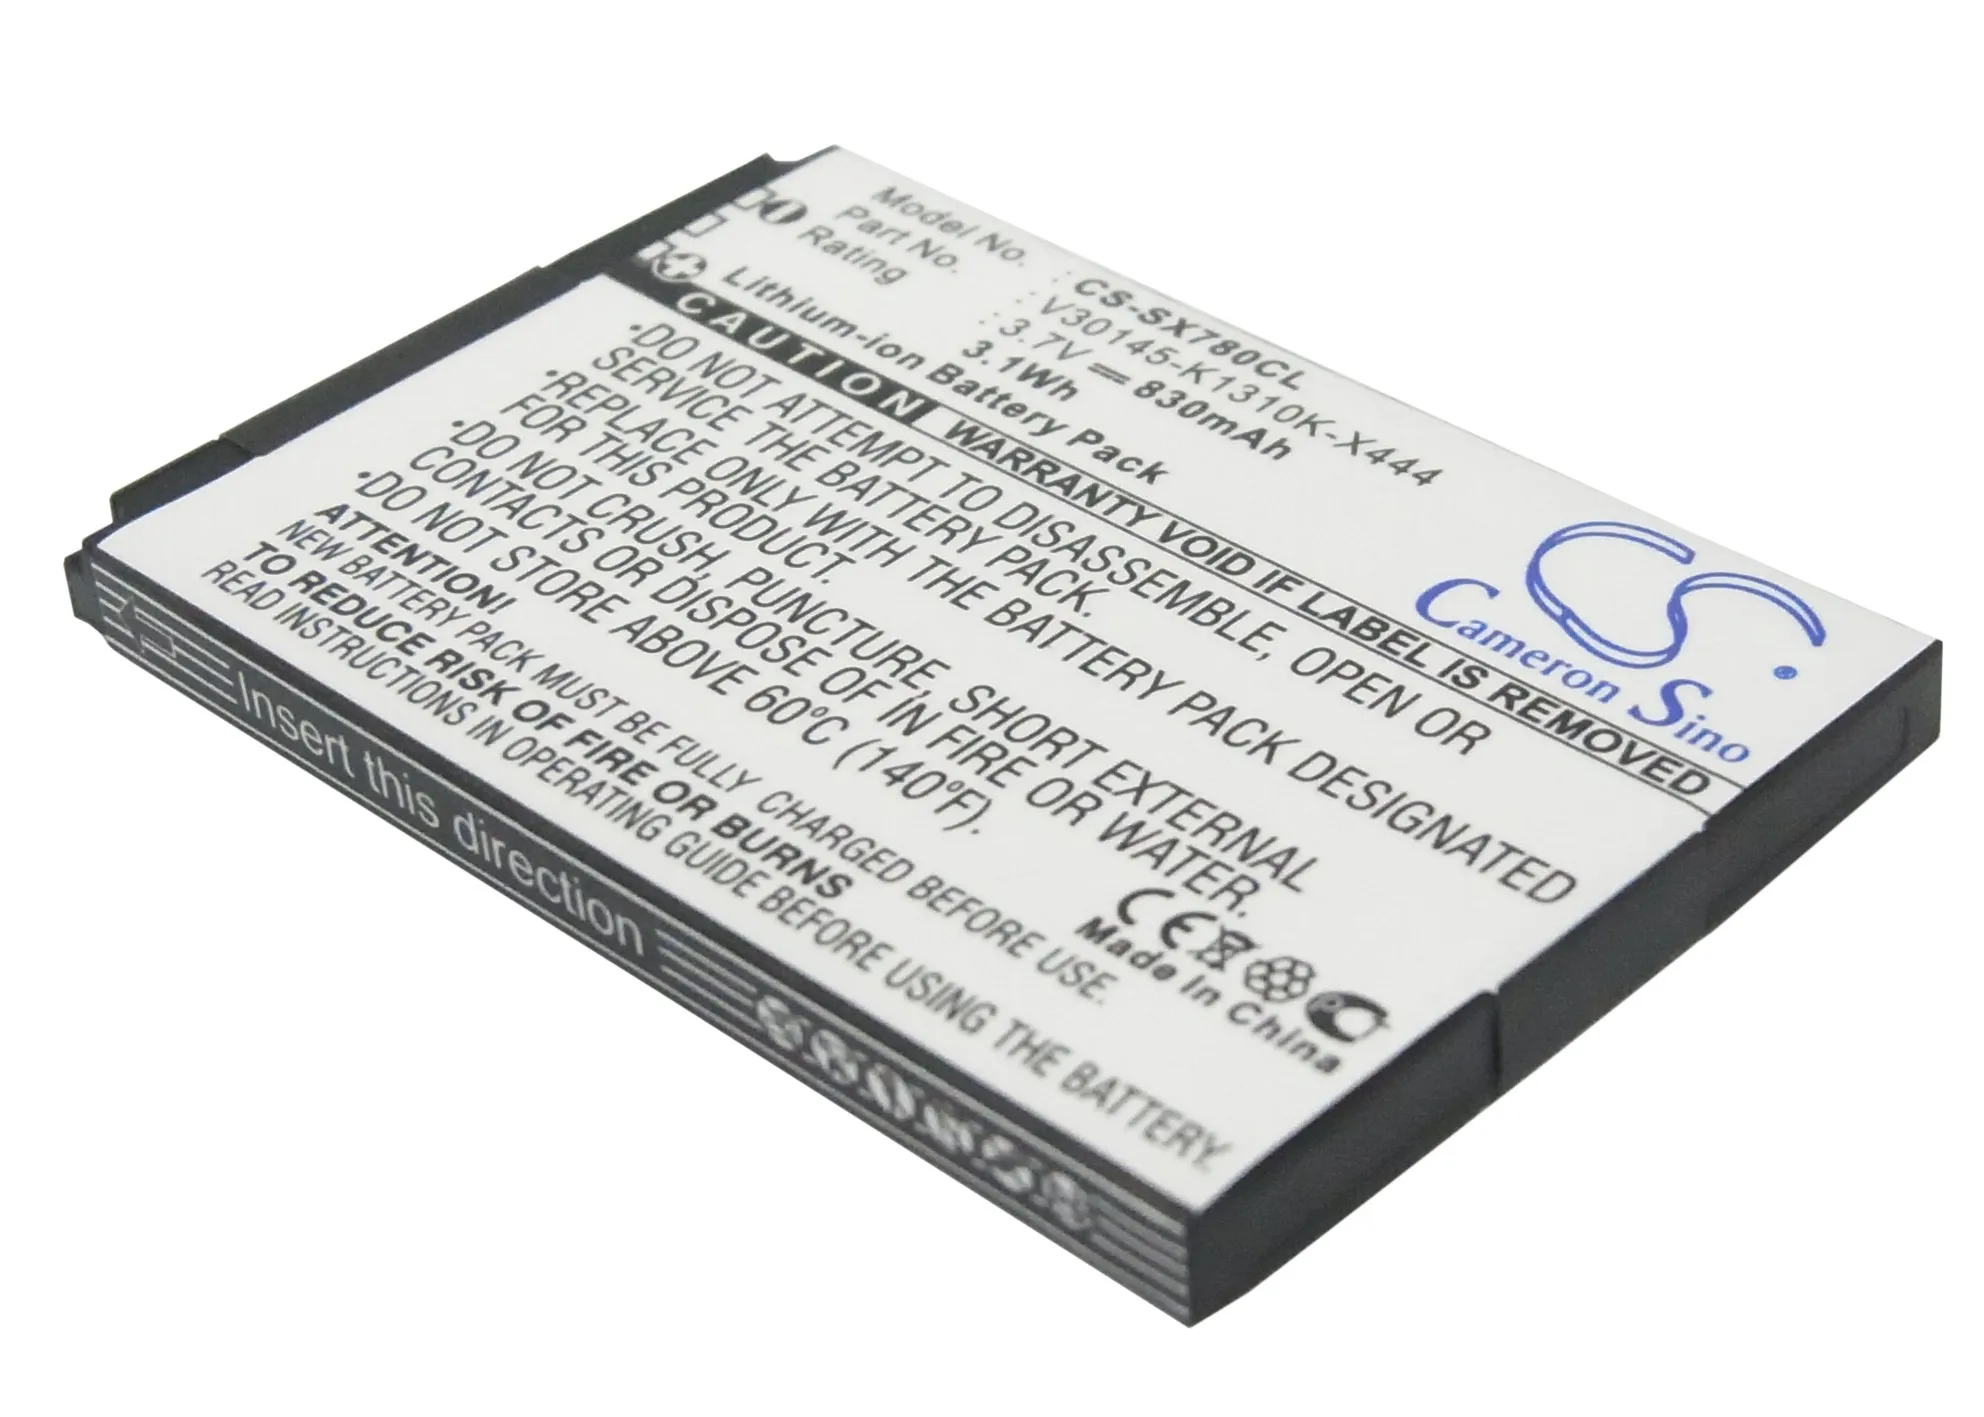 

CS Cordless Phone Battery for Siemens Gigaset SL78H SL780 SL785 SL788 SL400 SL400H SL78 SL78H SL400H fits 4250366817255